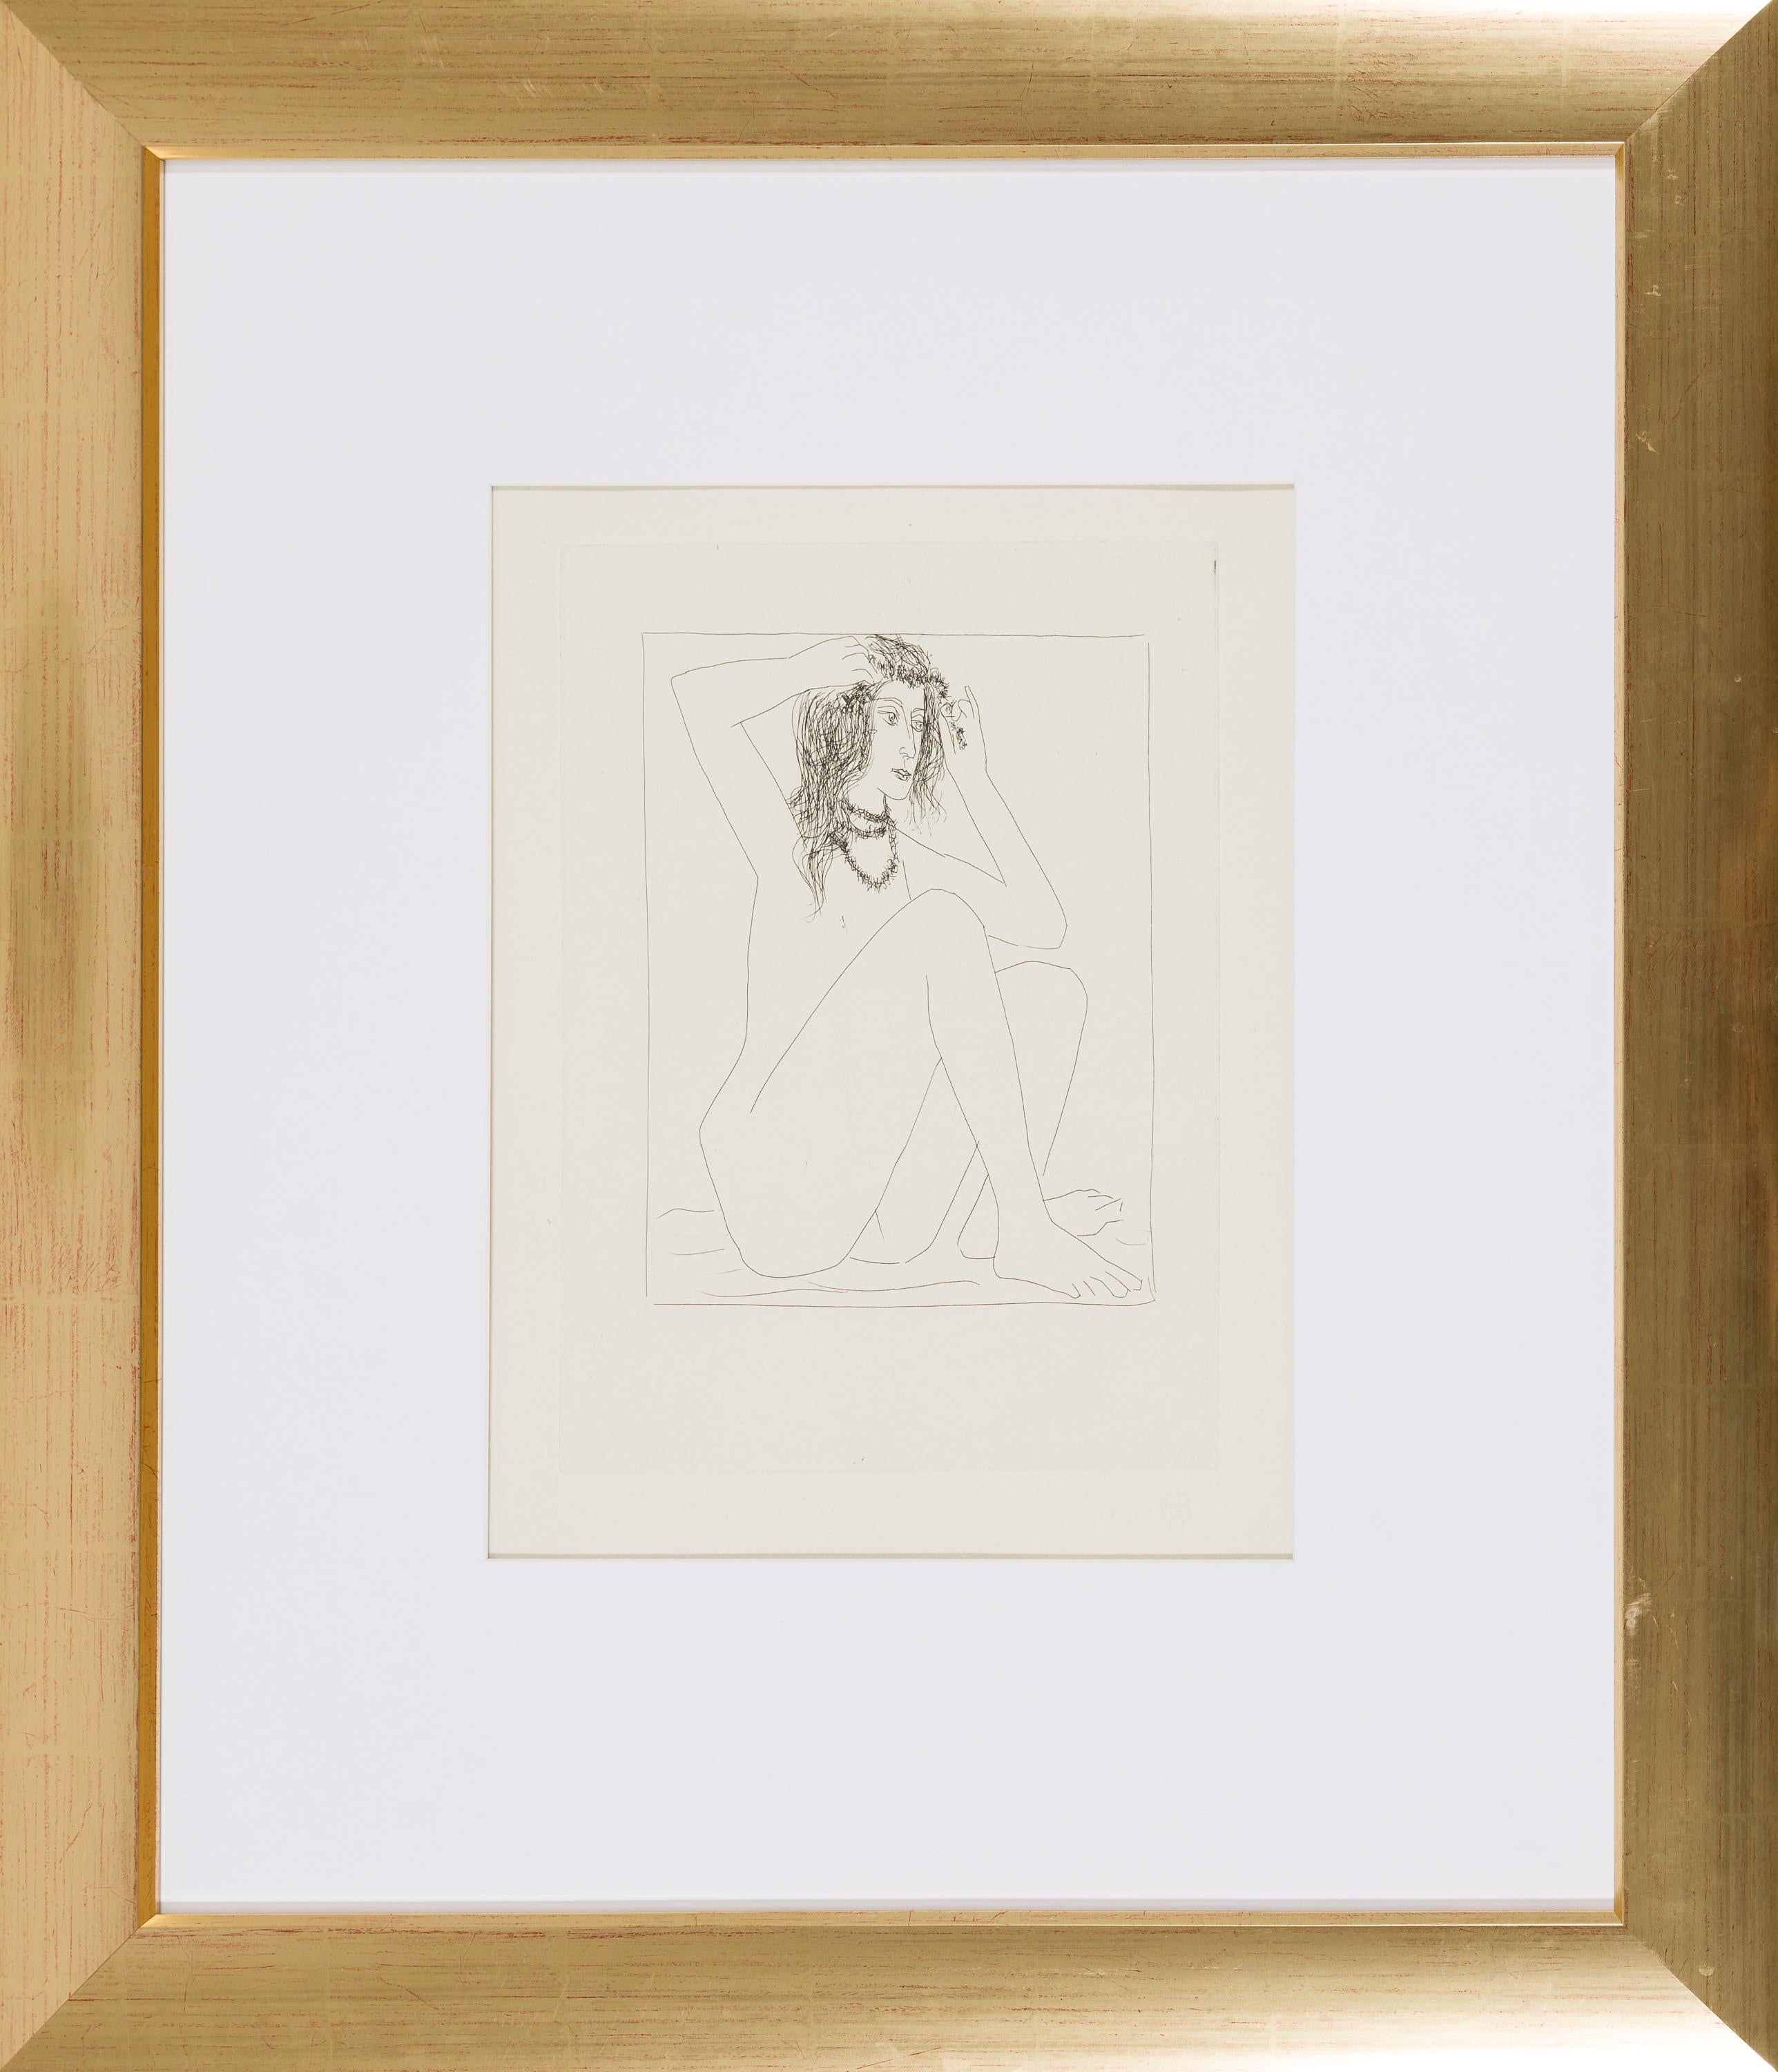 Femme nue se couronnant de fleurs - Modern Print by Pablo Picasso